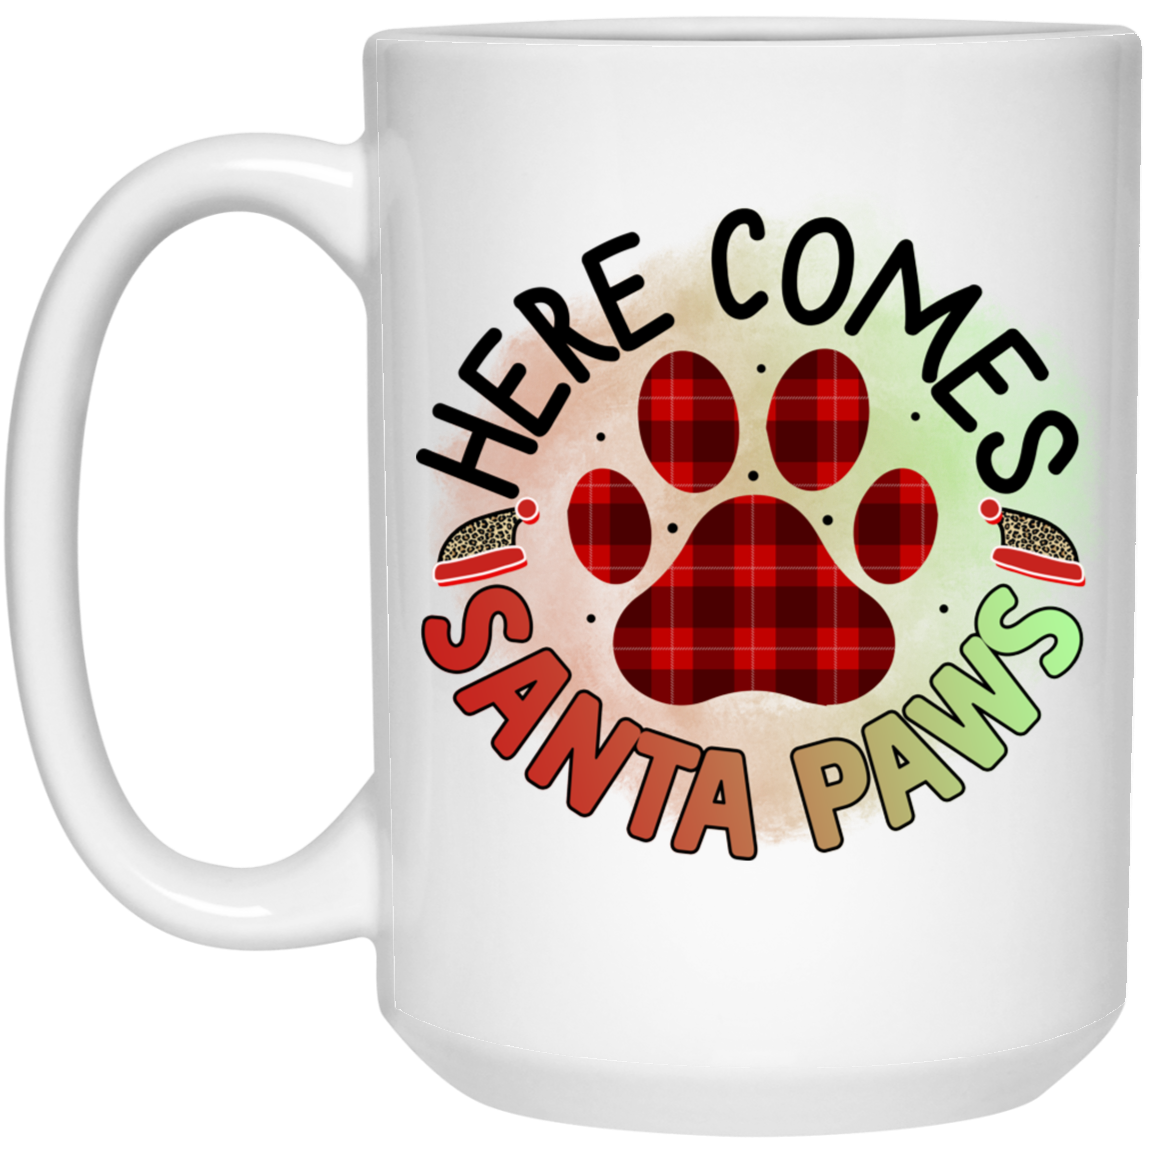 Here Comes Santa Paws Christmas Dog 15 oz. White Mug